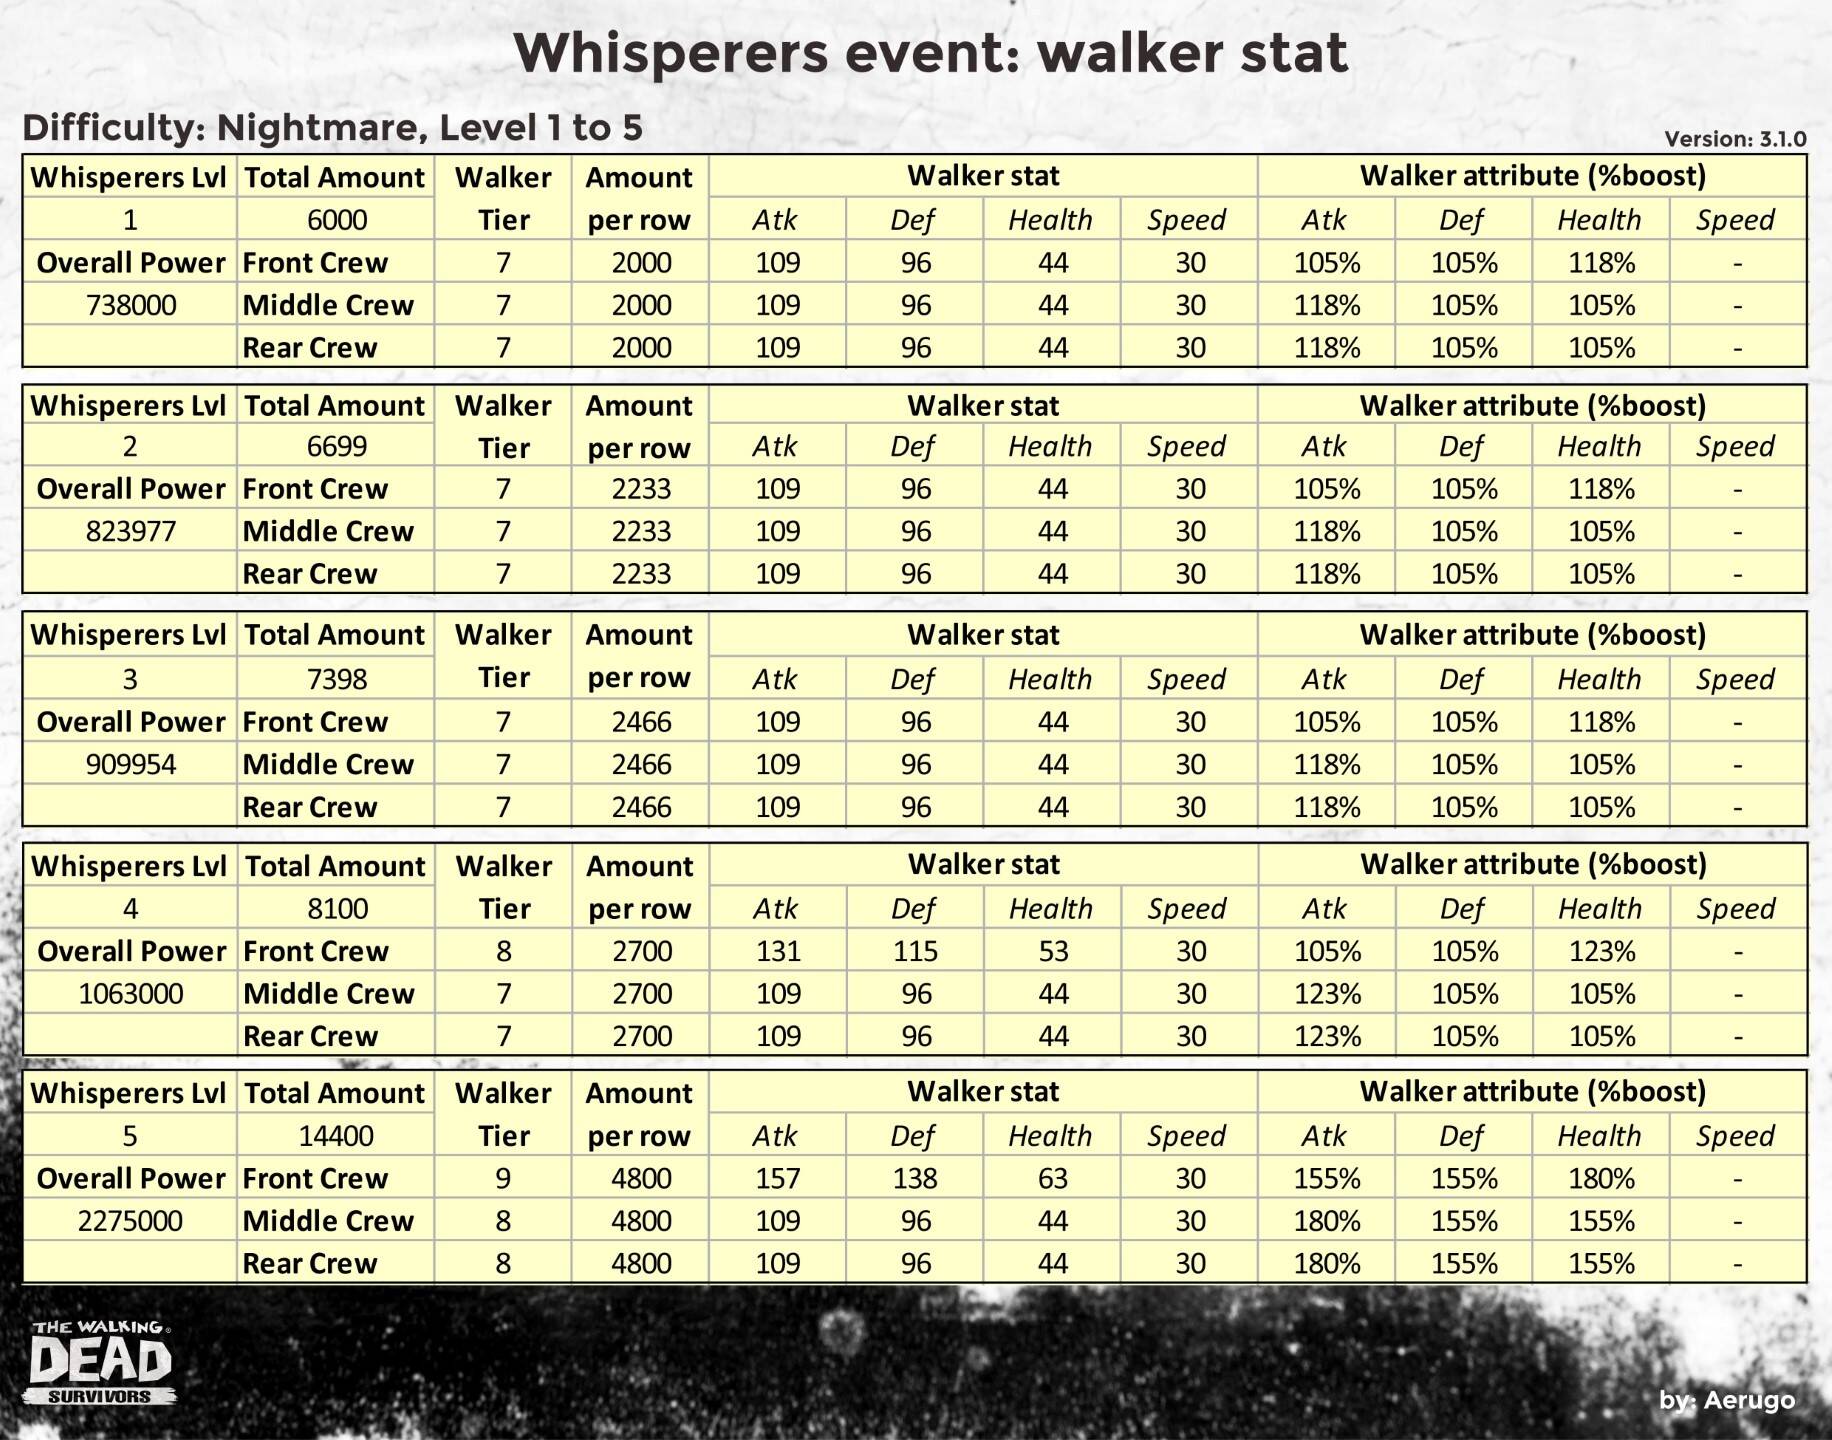 Whisperers_walkerstat_v3.1.0_part13 (1).jpg